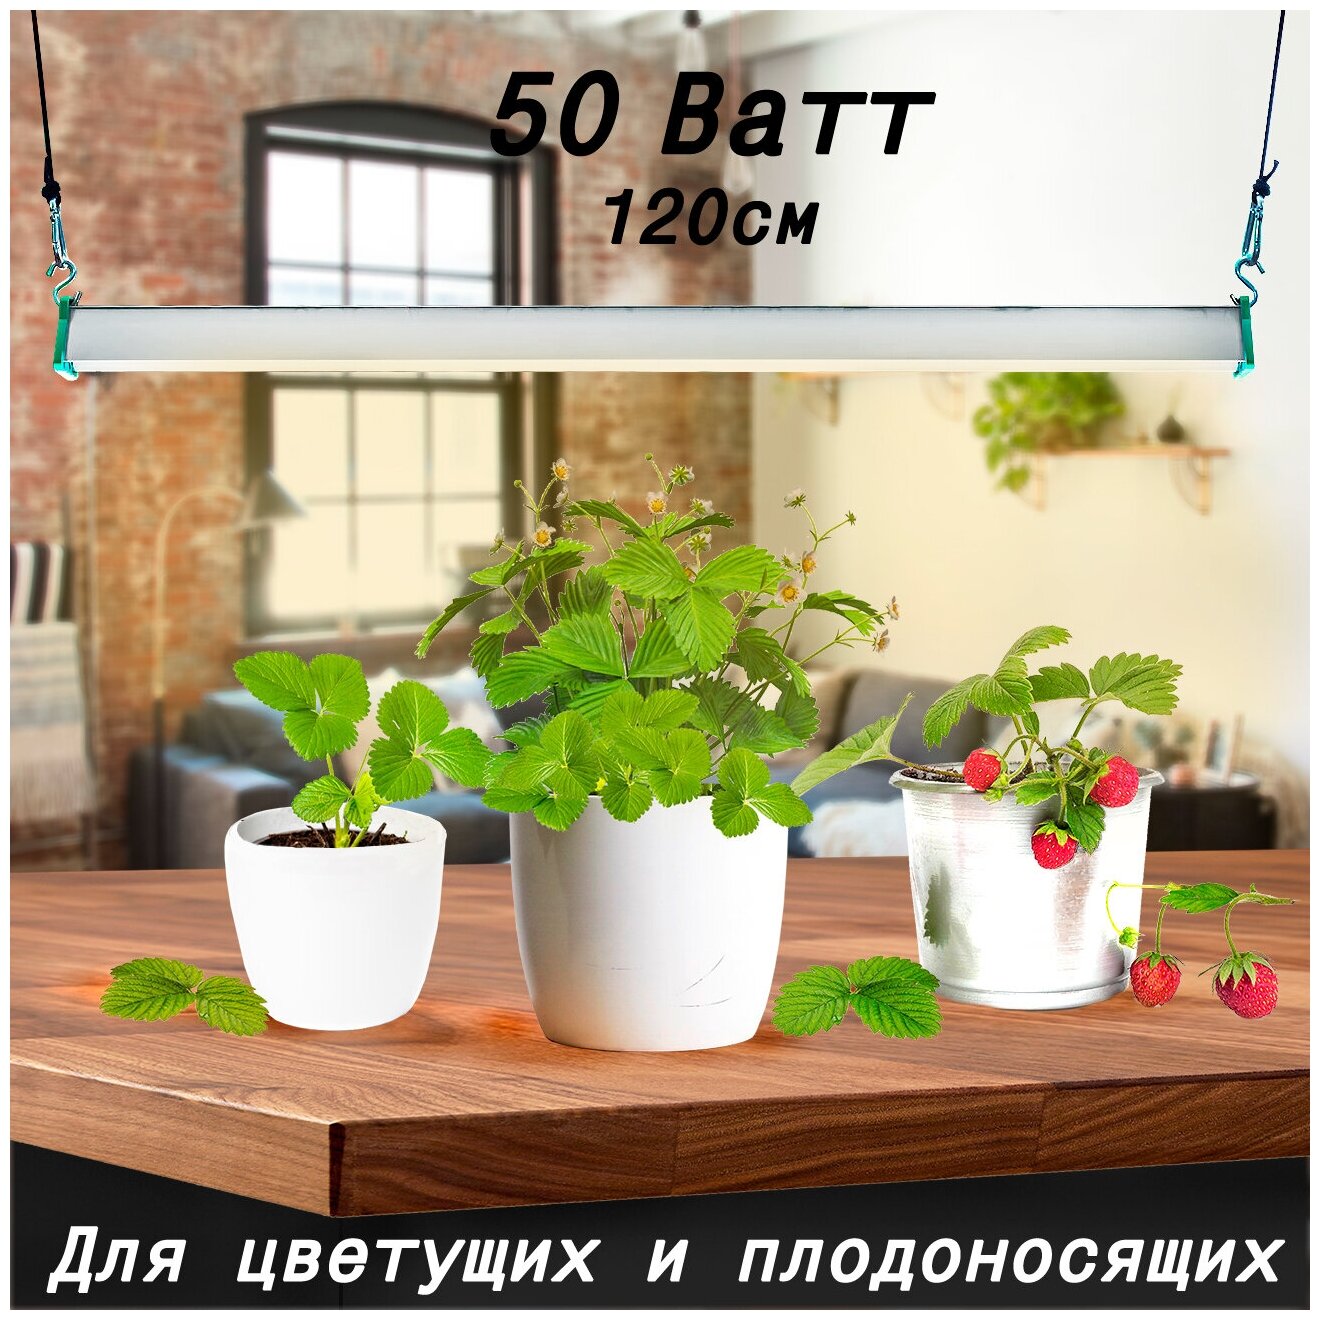 Фитолампа для светолюбивых растений MiniFermer Цветонос Samsung 3000К+660nm 50Вт 120см